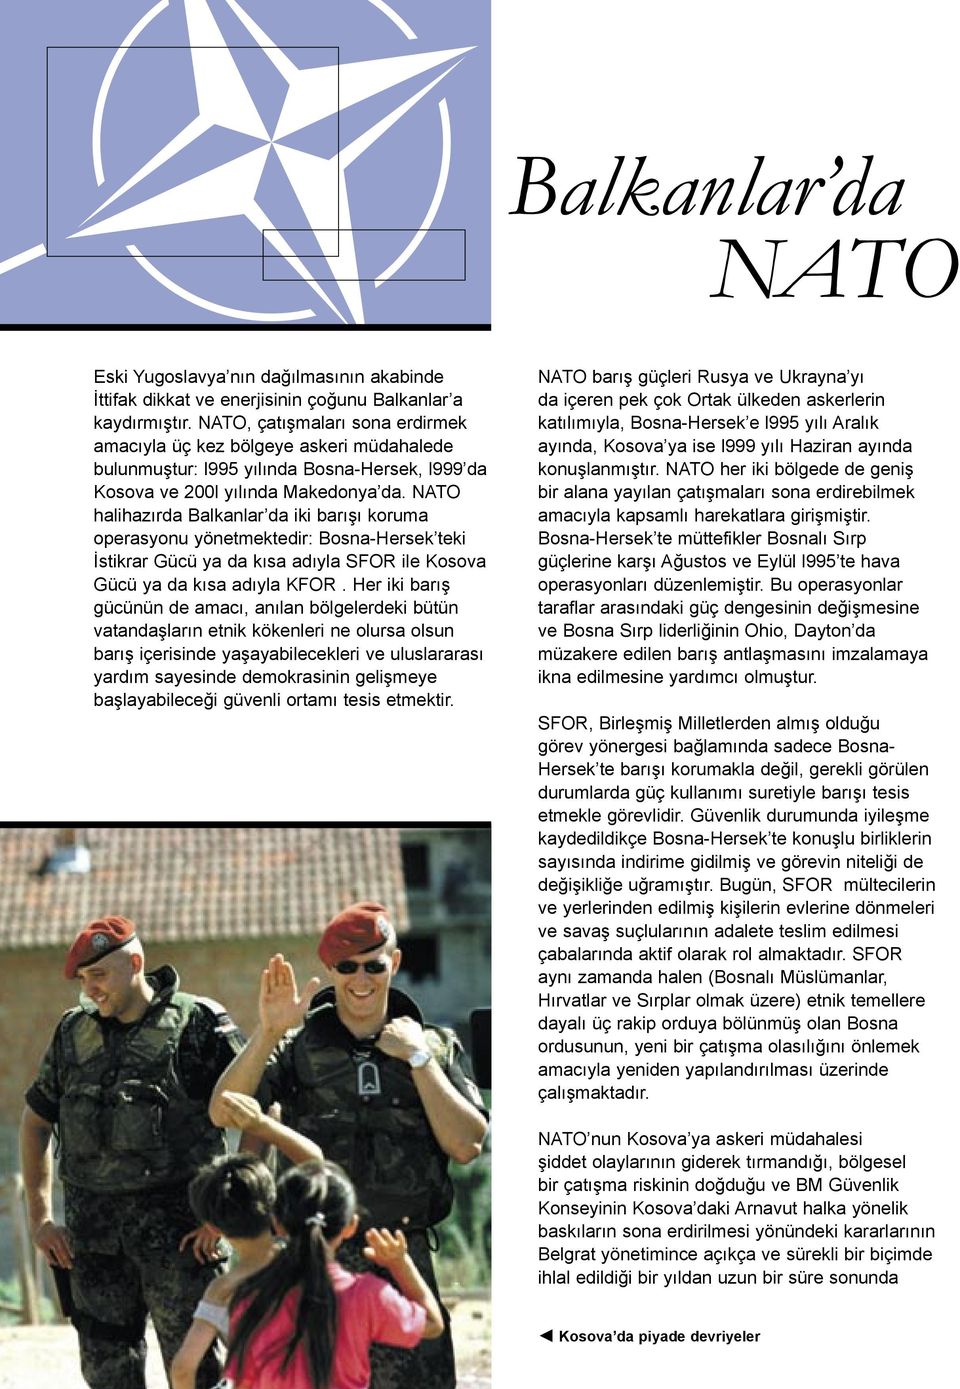 NATO halihazırda Balkanlar da iki barışı koruma operasyonu yönetmektedir: Bosna-Hersek teki İstikrar Gücü ya da kısa adıyla SFOR ile Kosova Gücü ya da kısa adıyla KFOR.